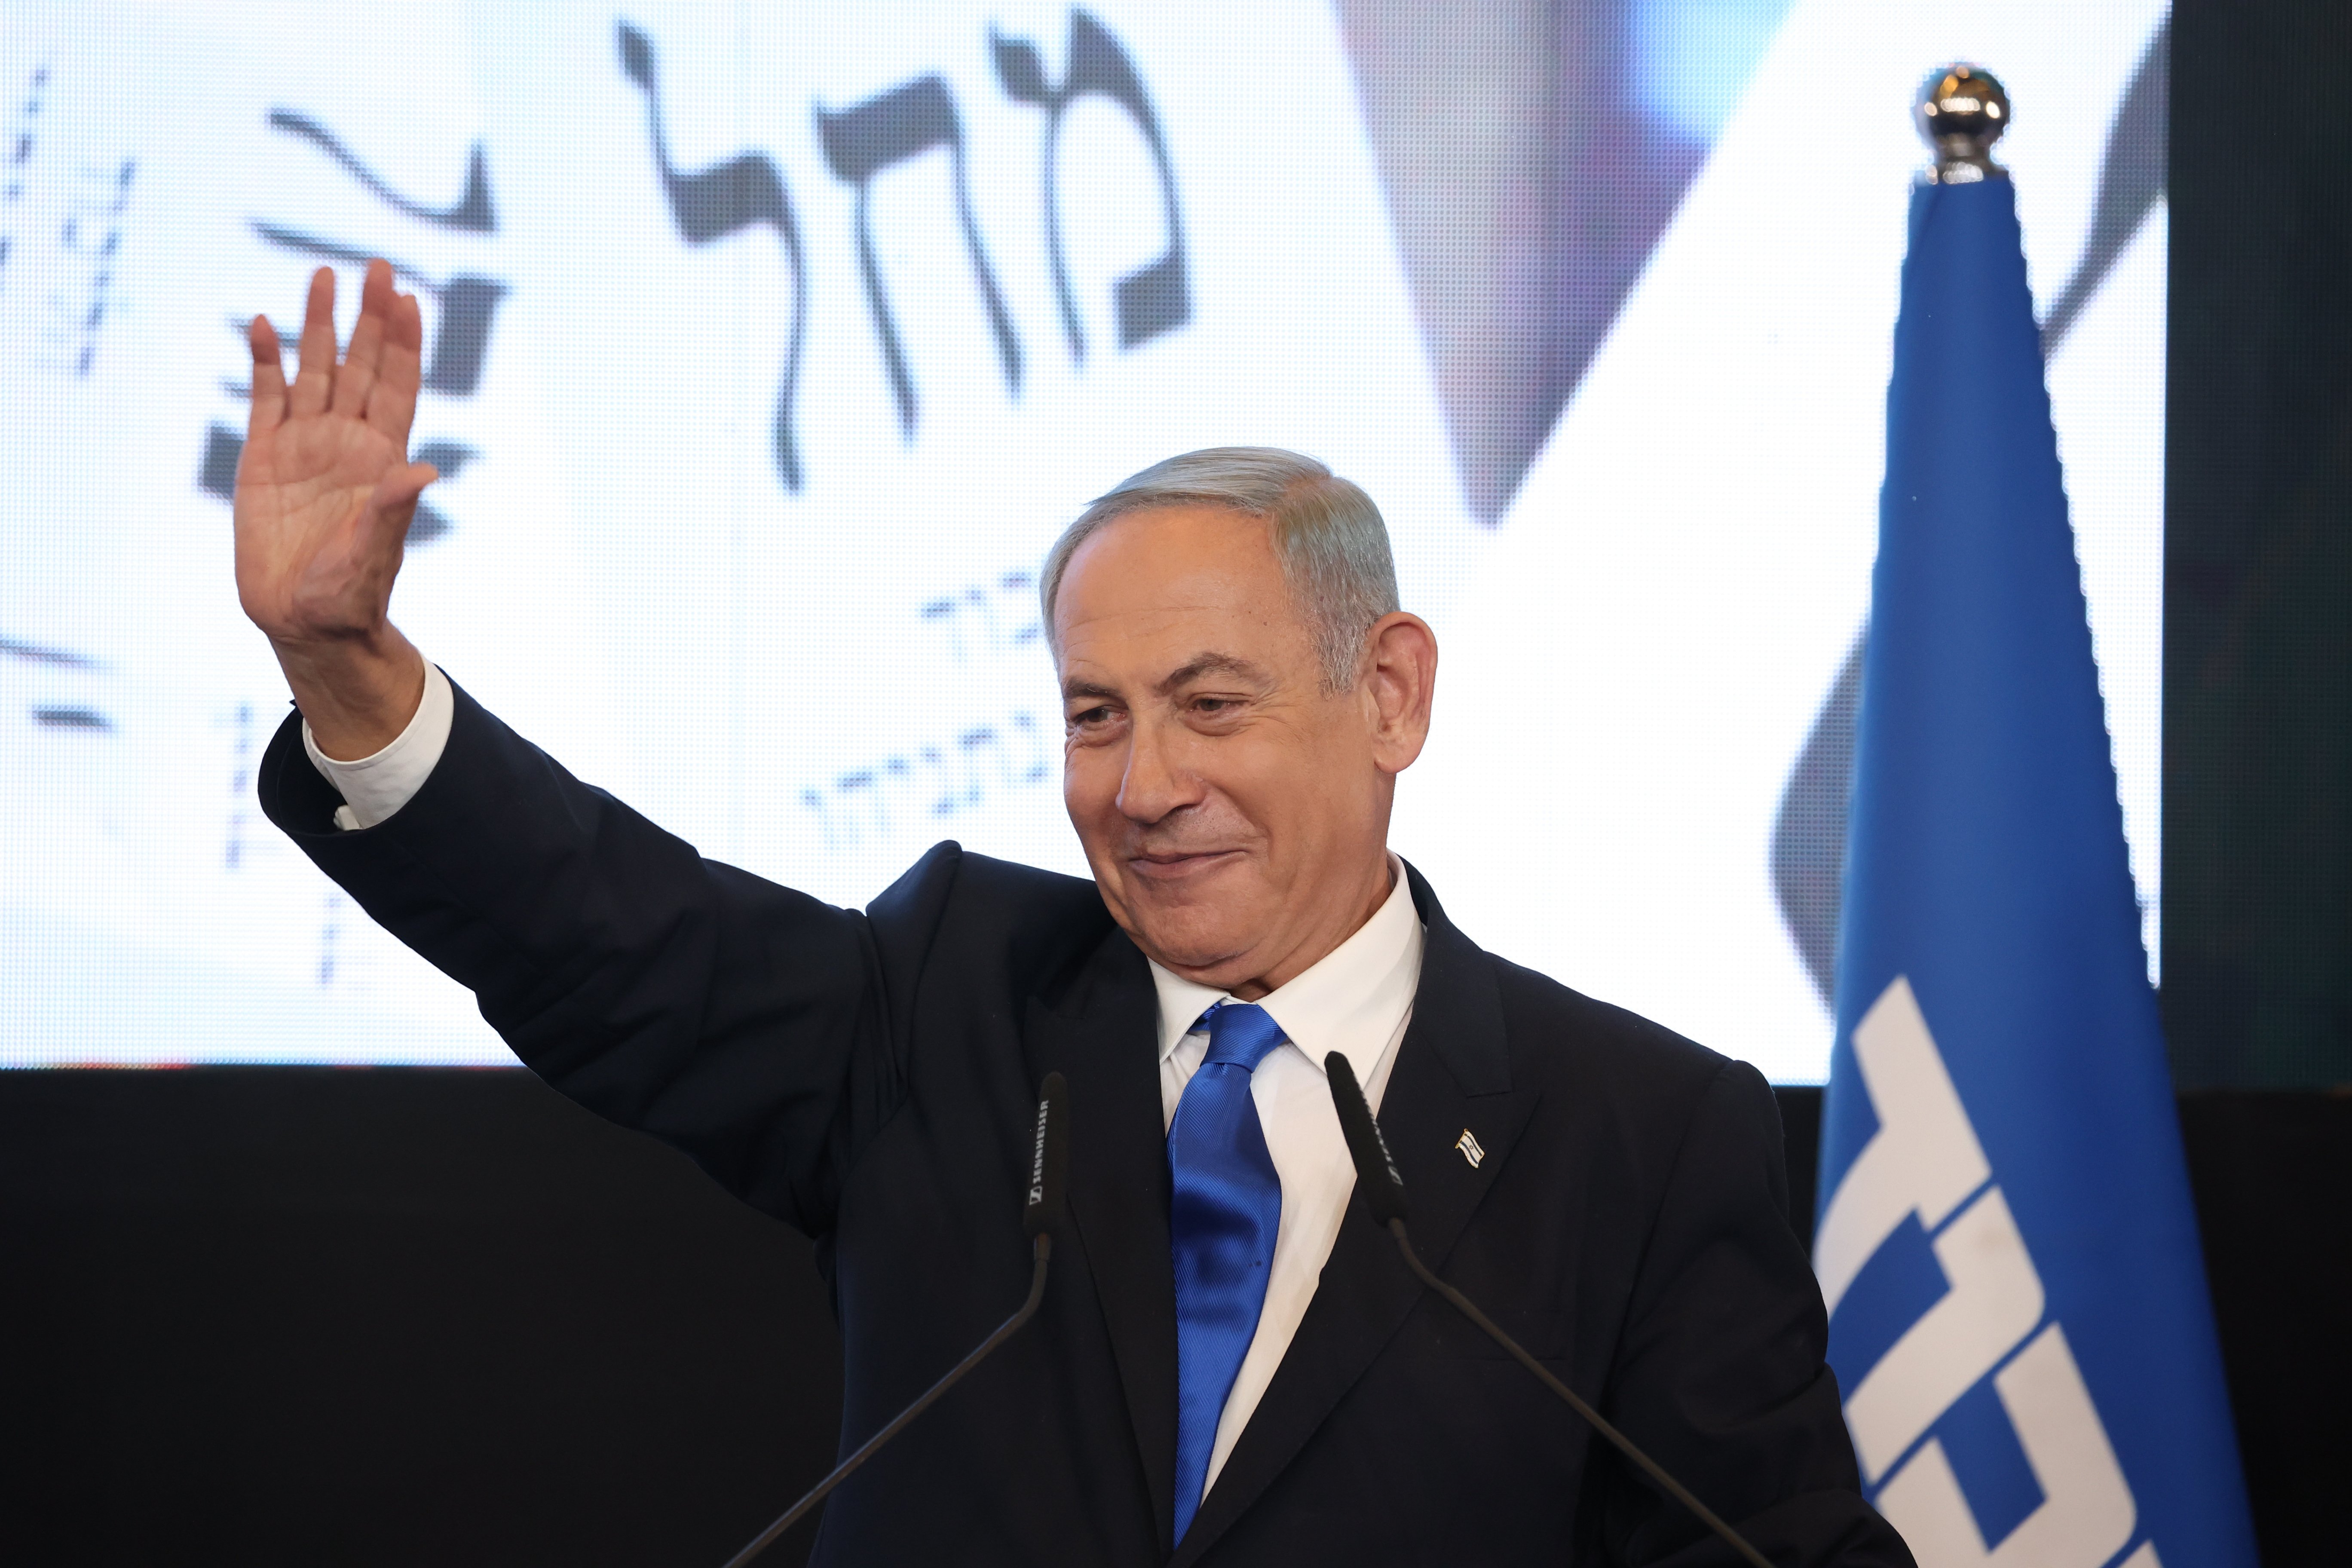 El escrutinio confirma la victoria electoral del bloque de Netanyahu para volver a gobernar Israel